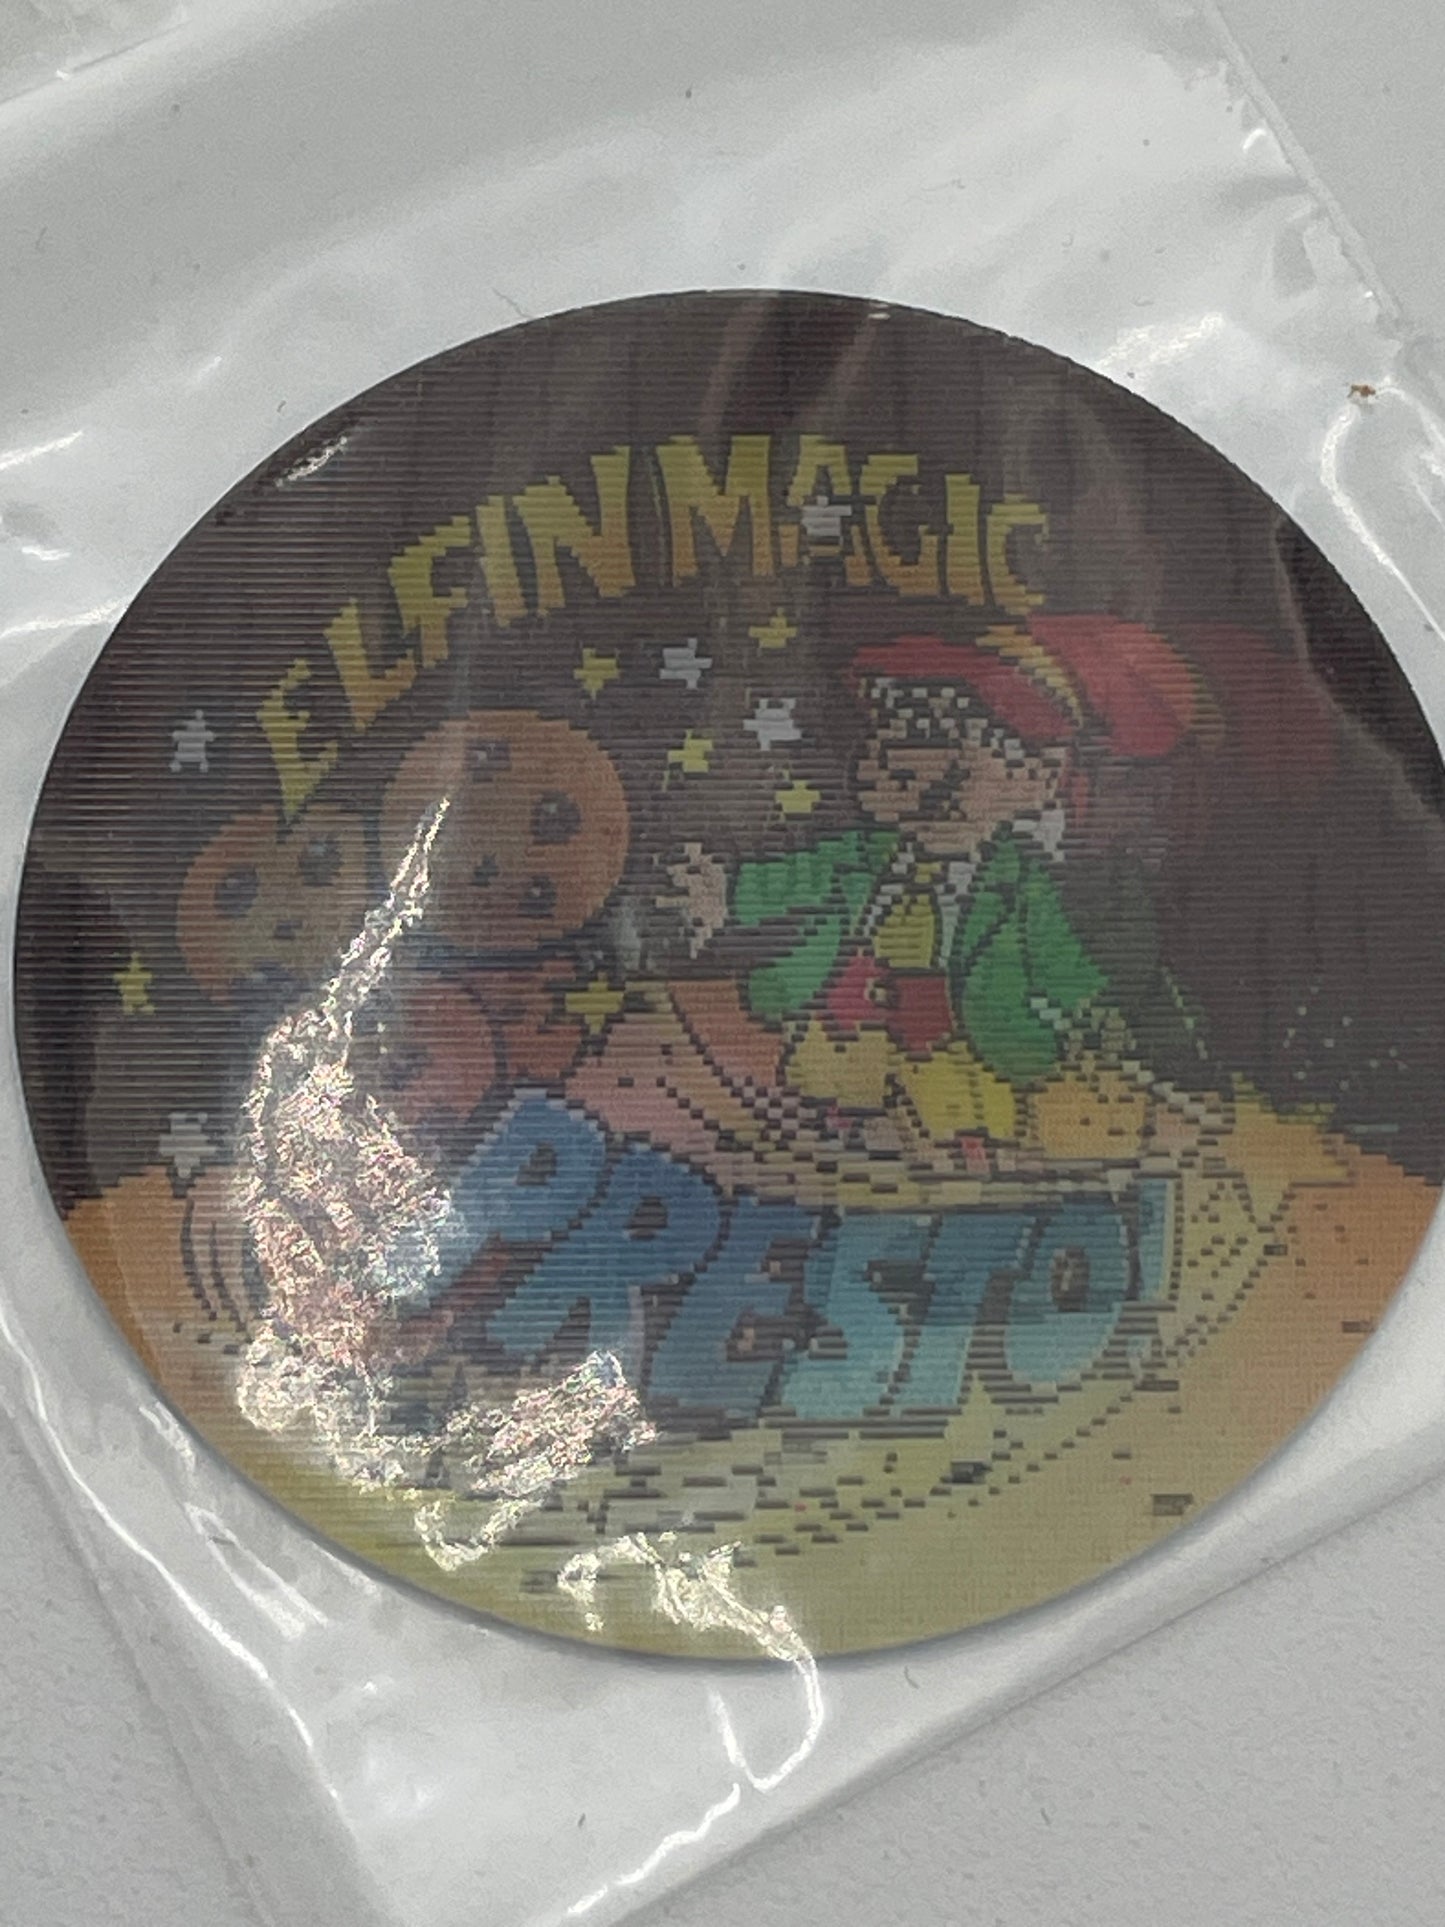 Pogs - Keebler Elfin Magic - 3D Presto! 1994 #101182